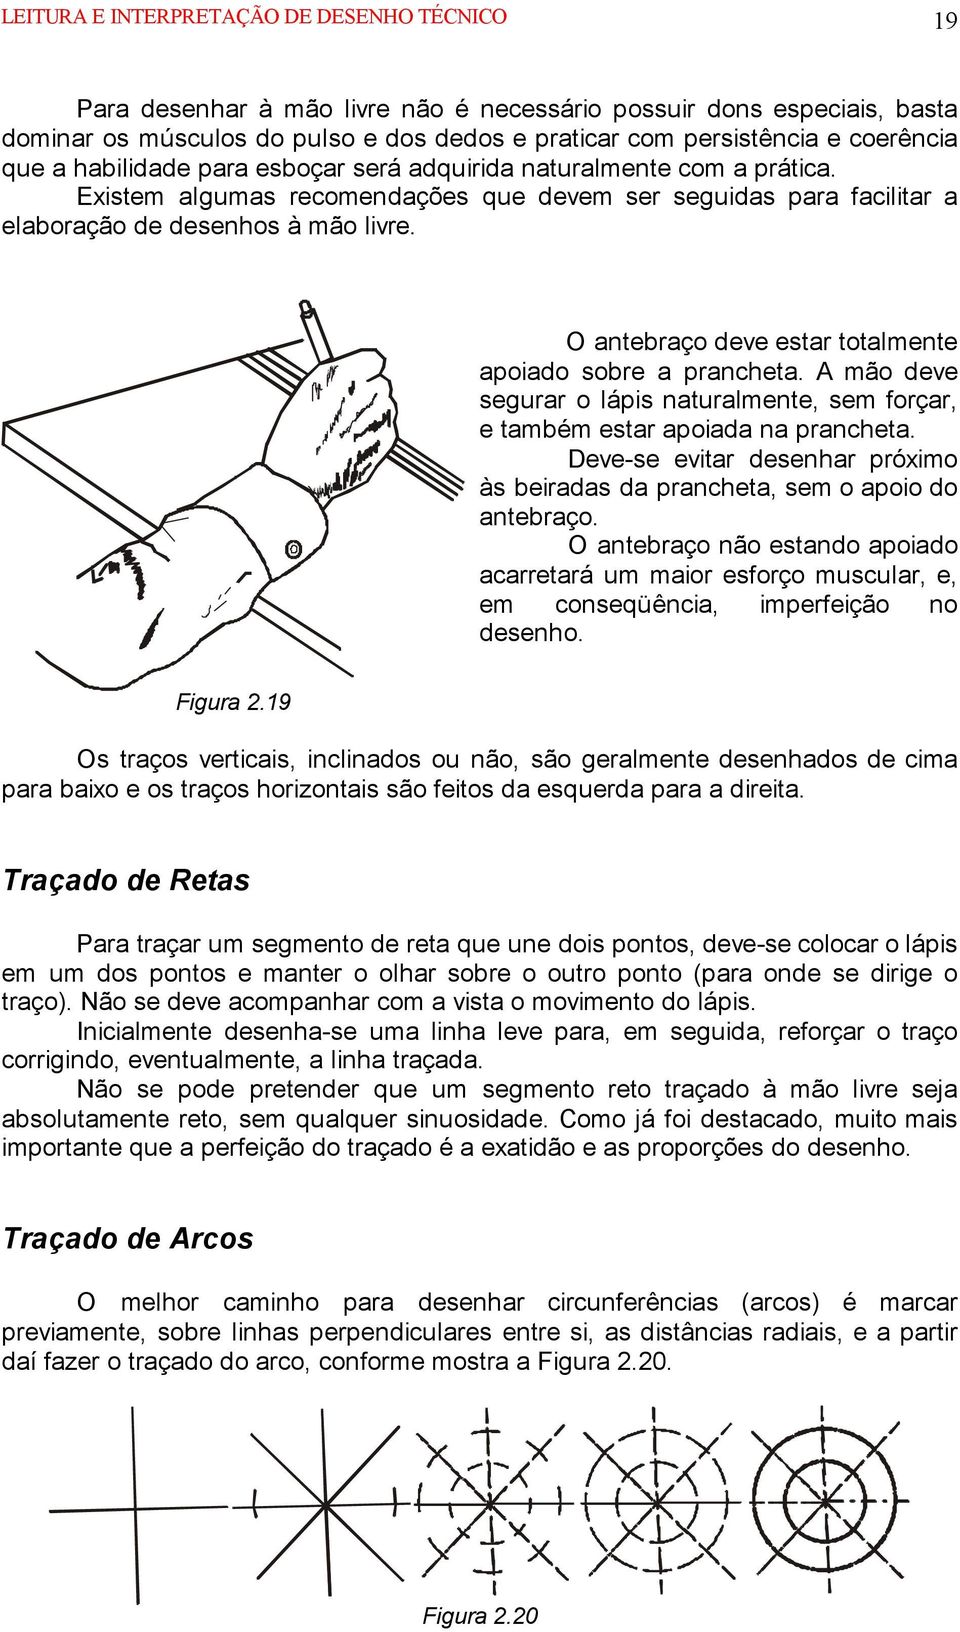 O antebraço deve estar totalmente apoiado sobre a prancheta. A mão deve segurar o lápis naturalmente, sem forçar, e também estar apoiada na prancheta.